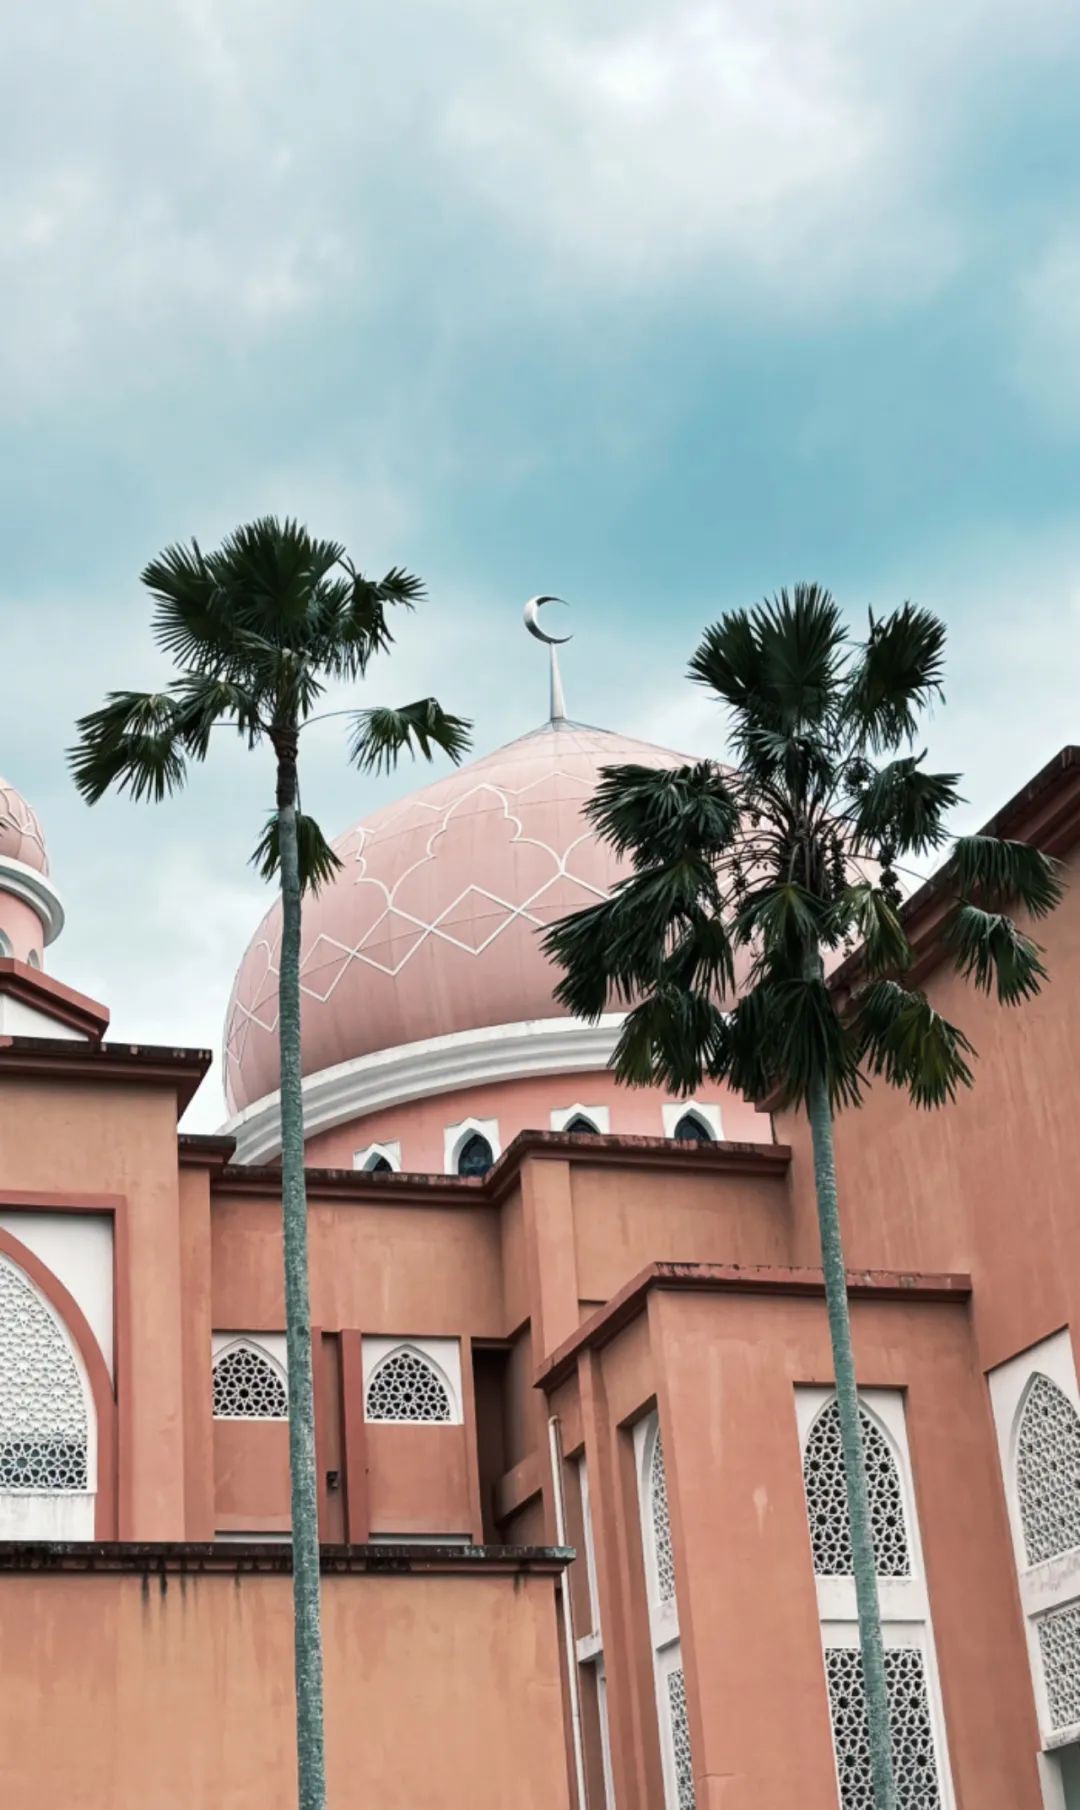 海滩，清真寺，特色美食，来马来西亚沙巴感受不一样的海岛风情